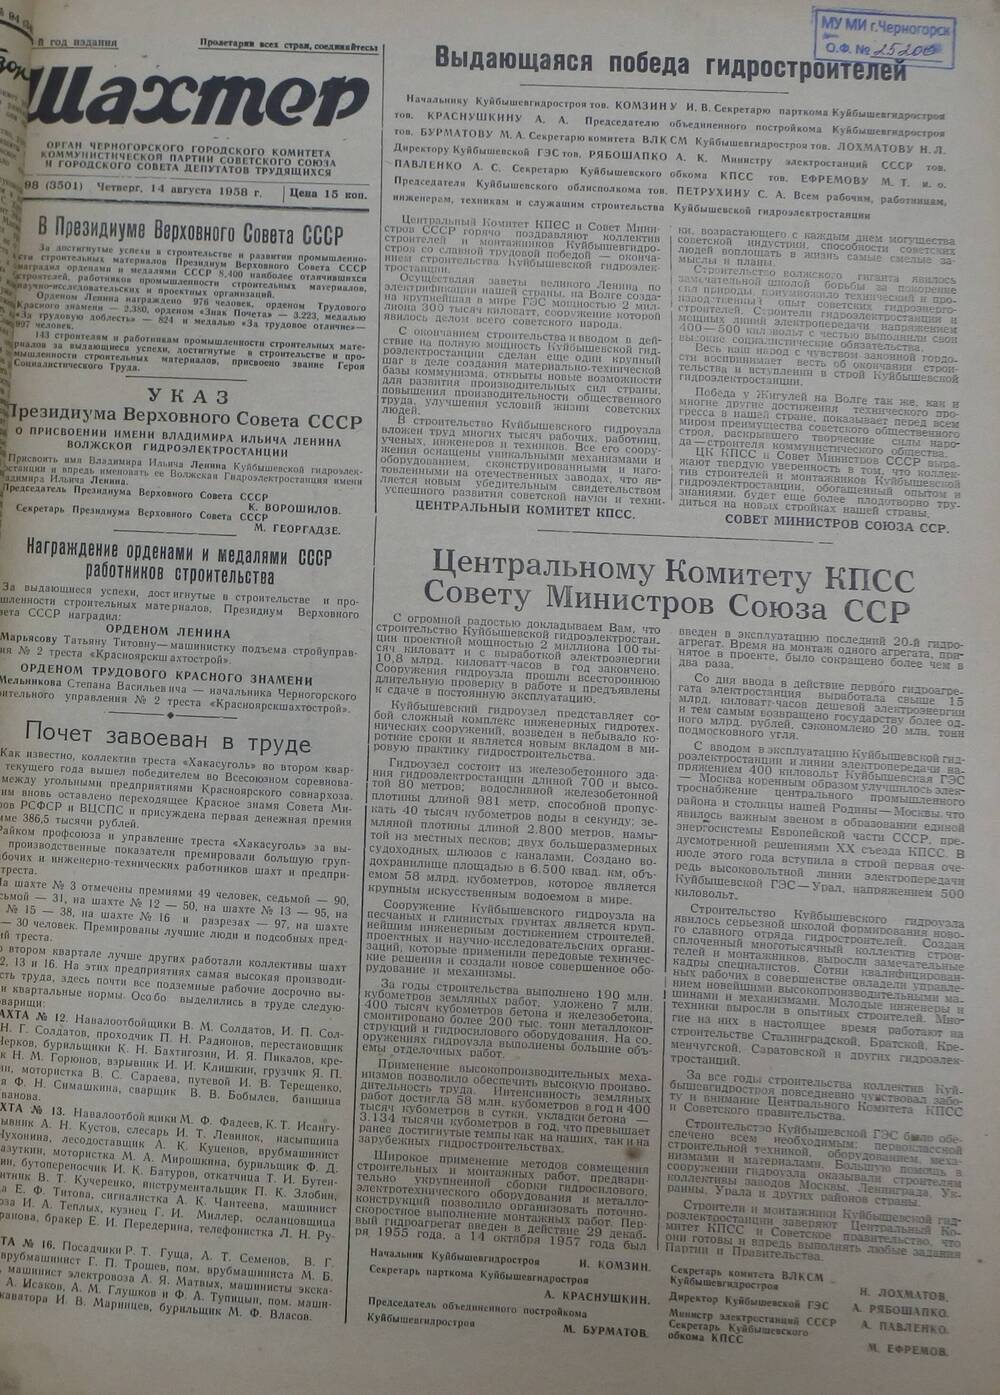 Газета «Шахтер». Выпуск № 98 от 14.08.1958 г.